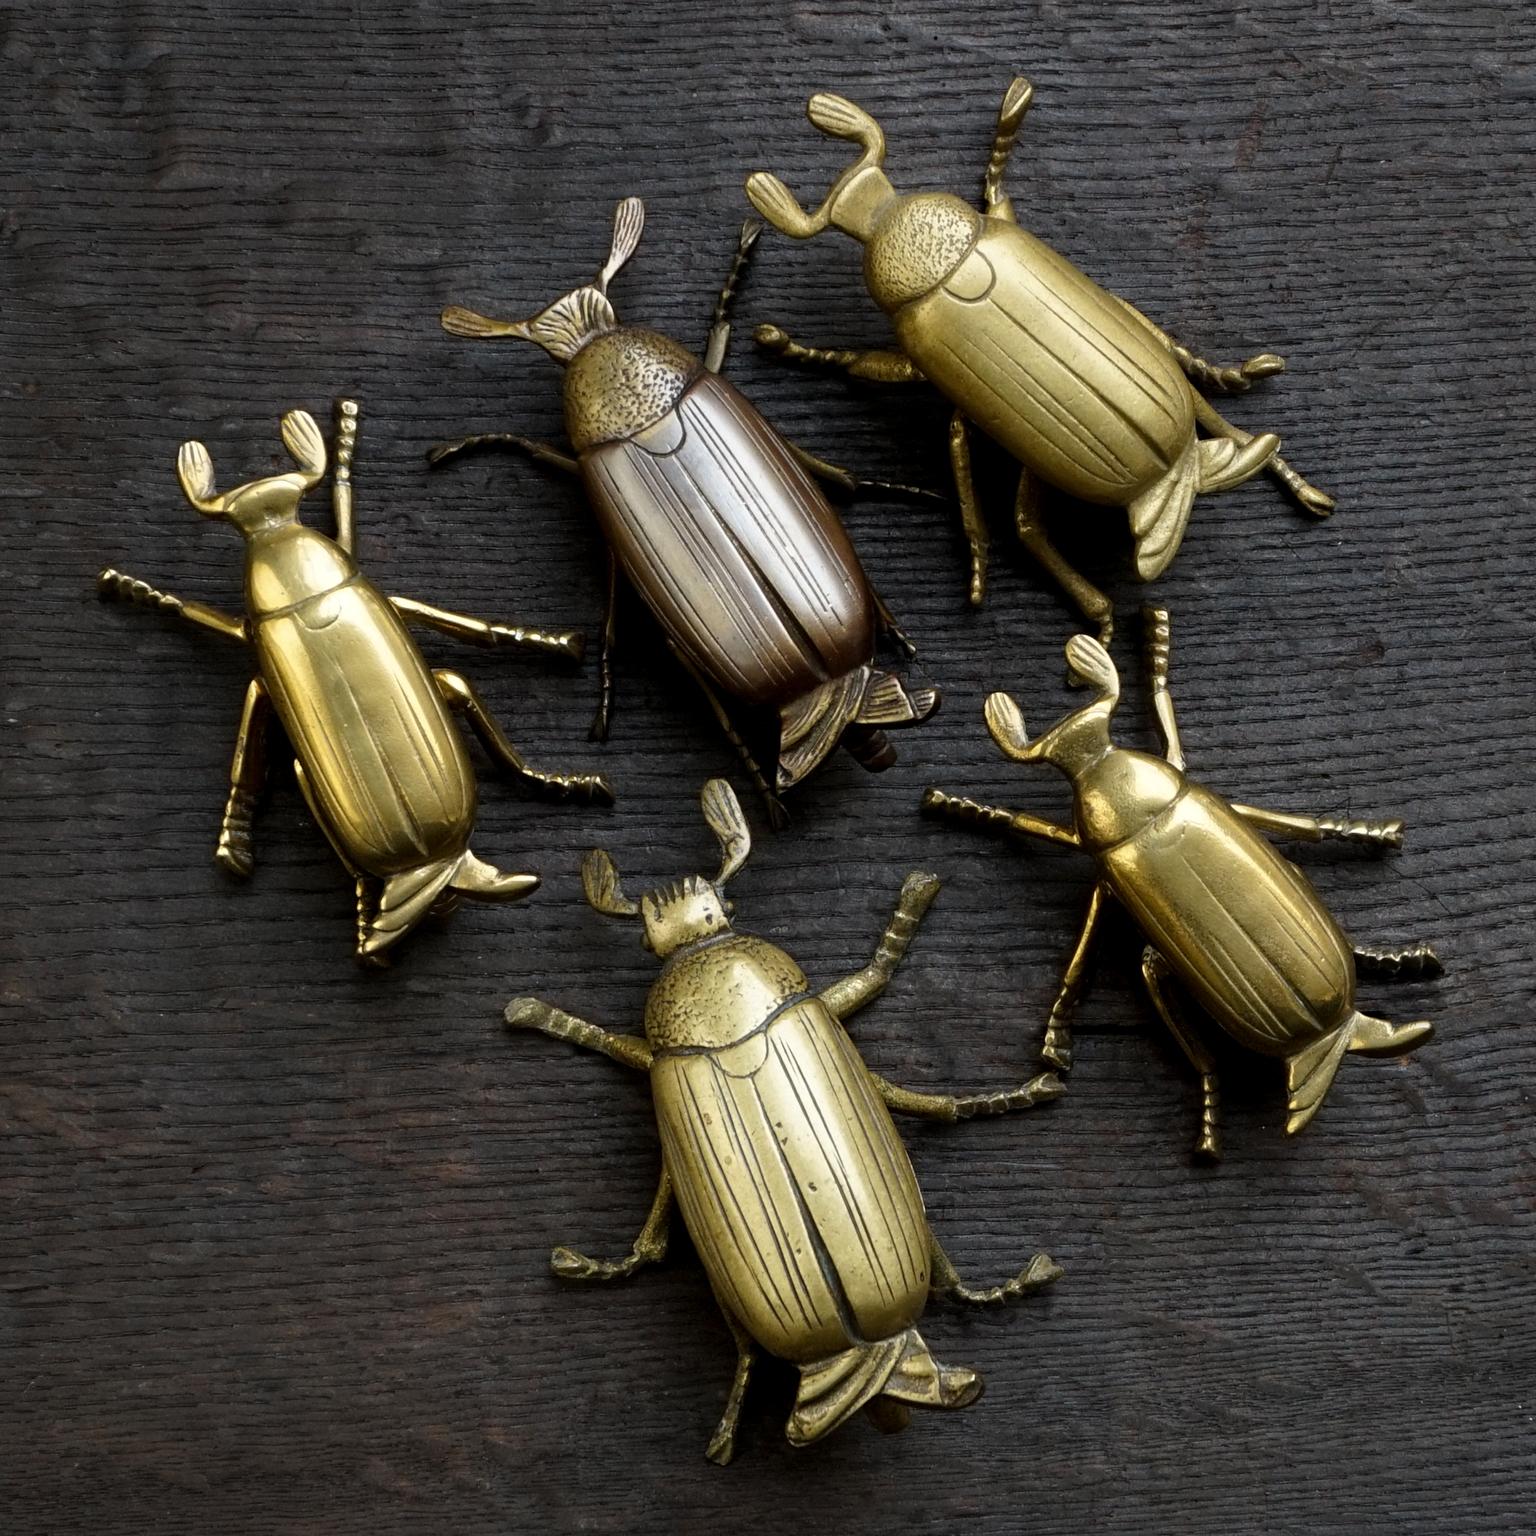 bronze beetle